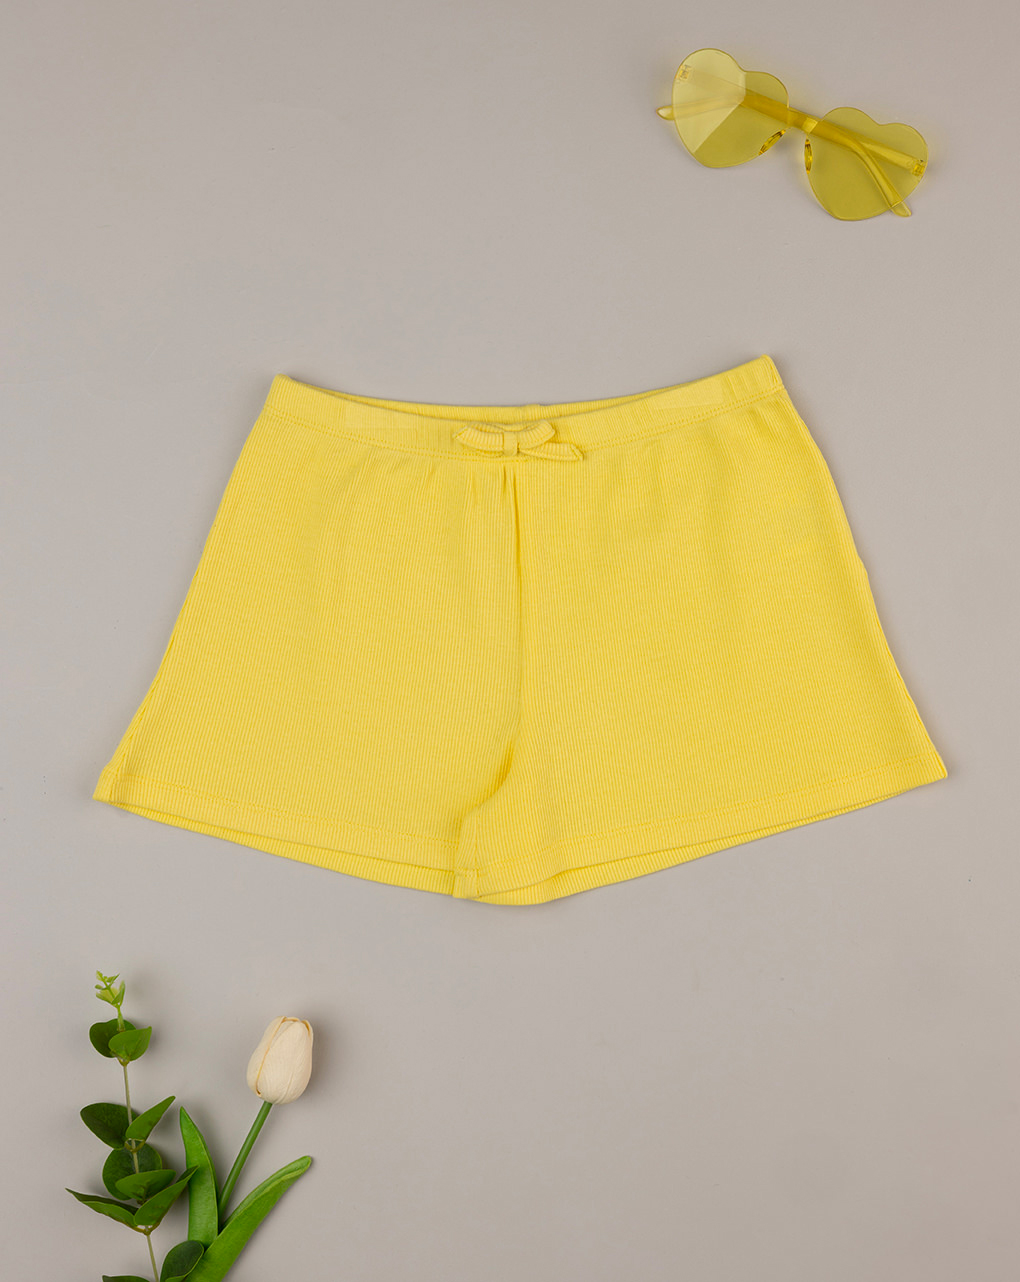 Pantalón amarillo corto informal para niña - Prénatal